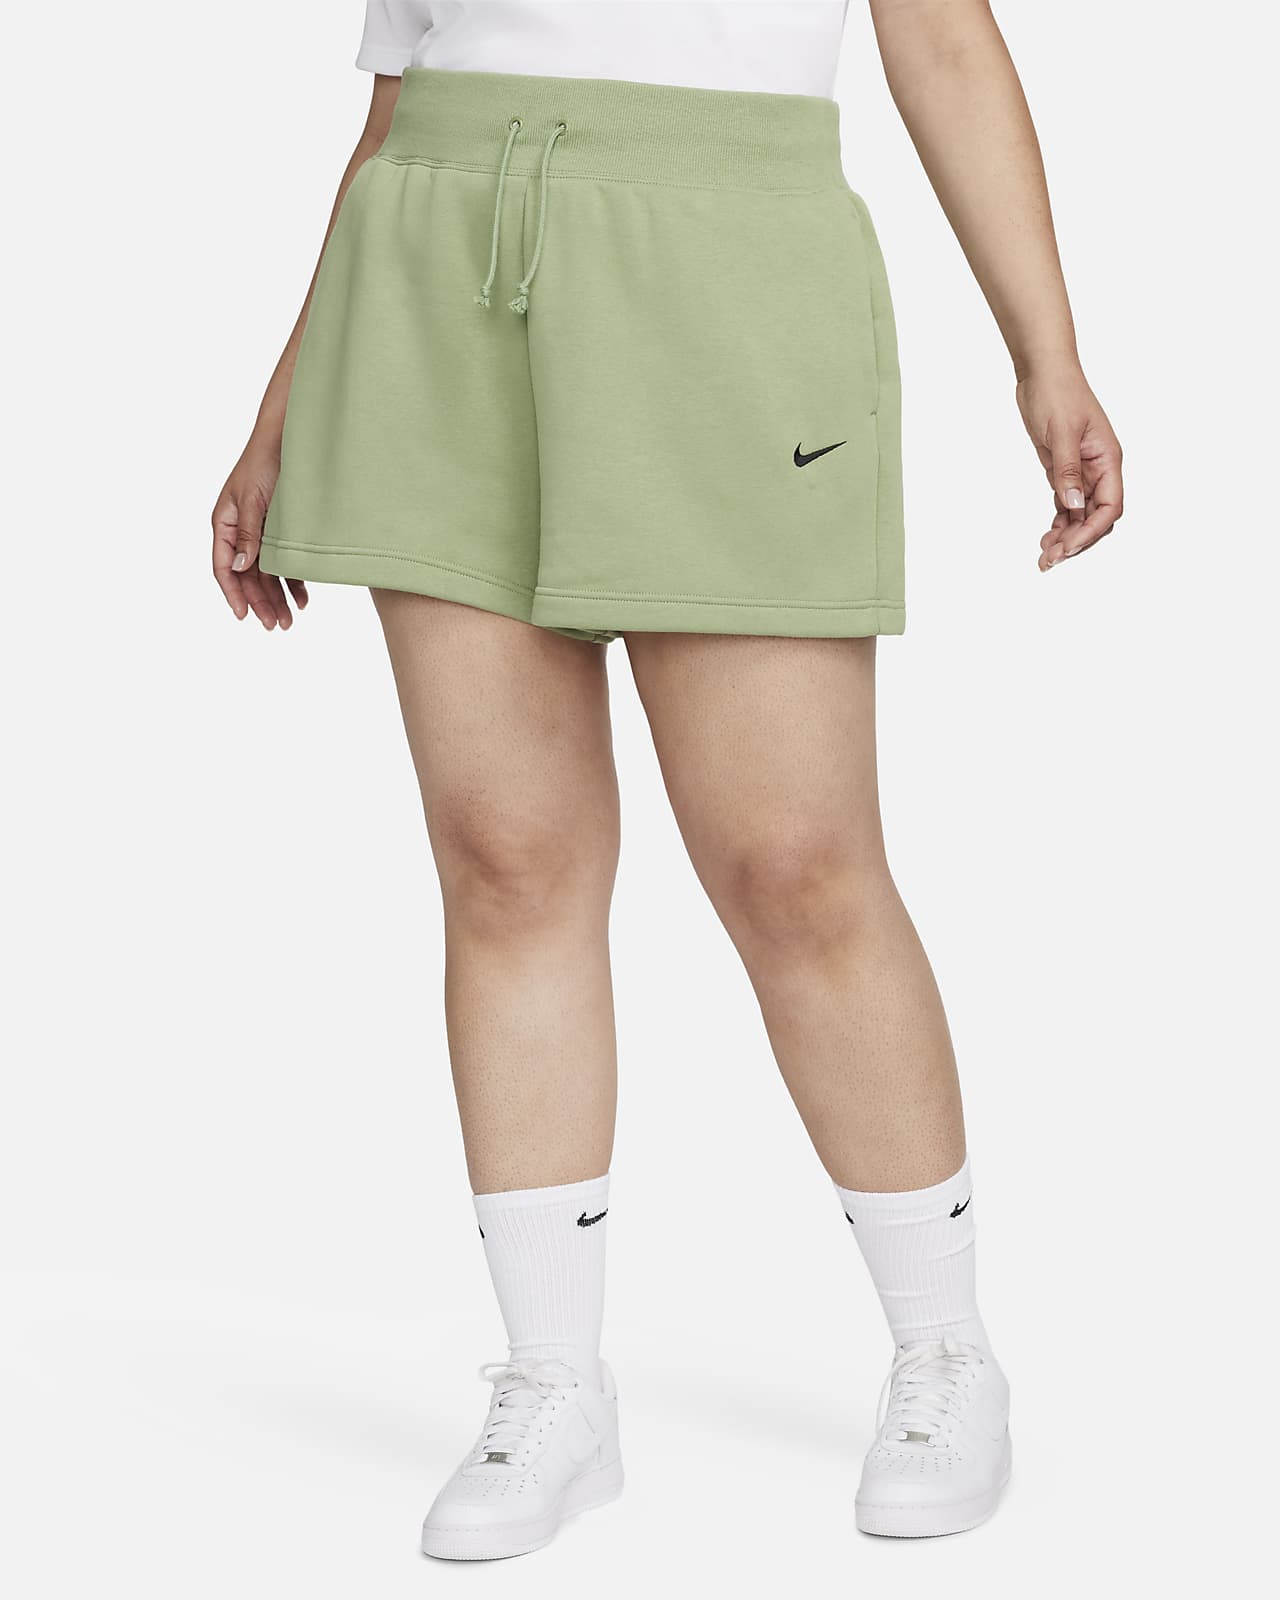 Shorts de cintura alta con ajuste holgado para mujer (talla grande) Nike Sportswear Phoenix